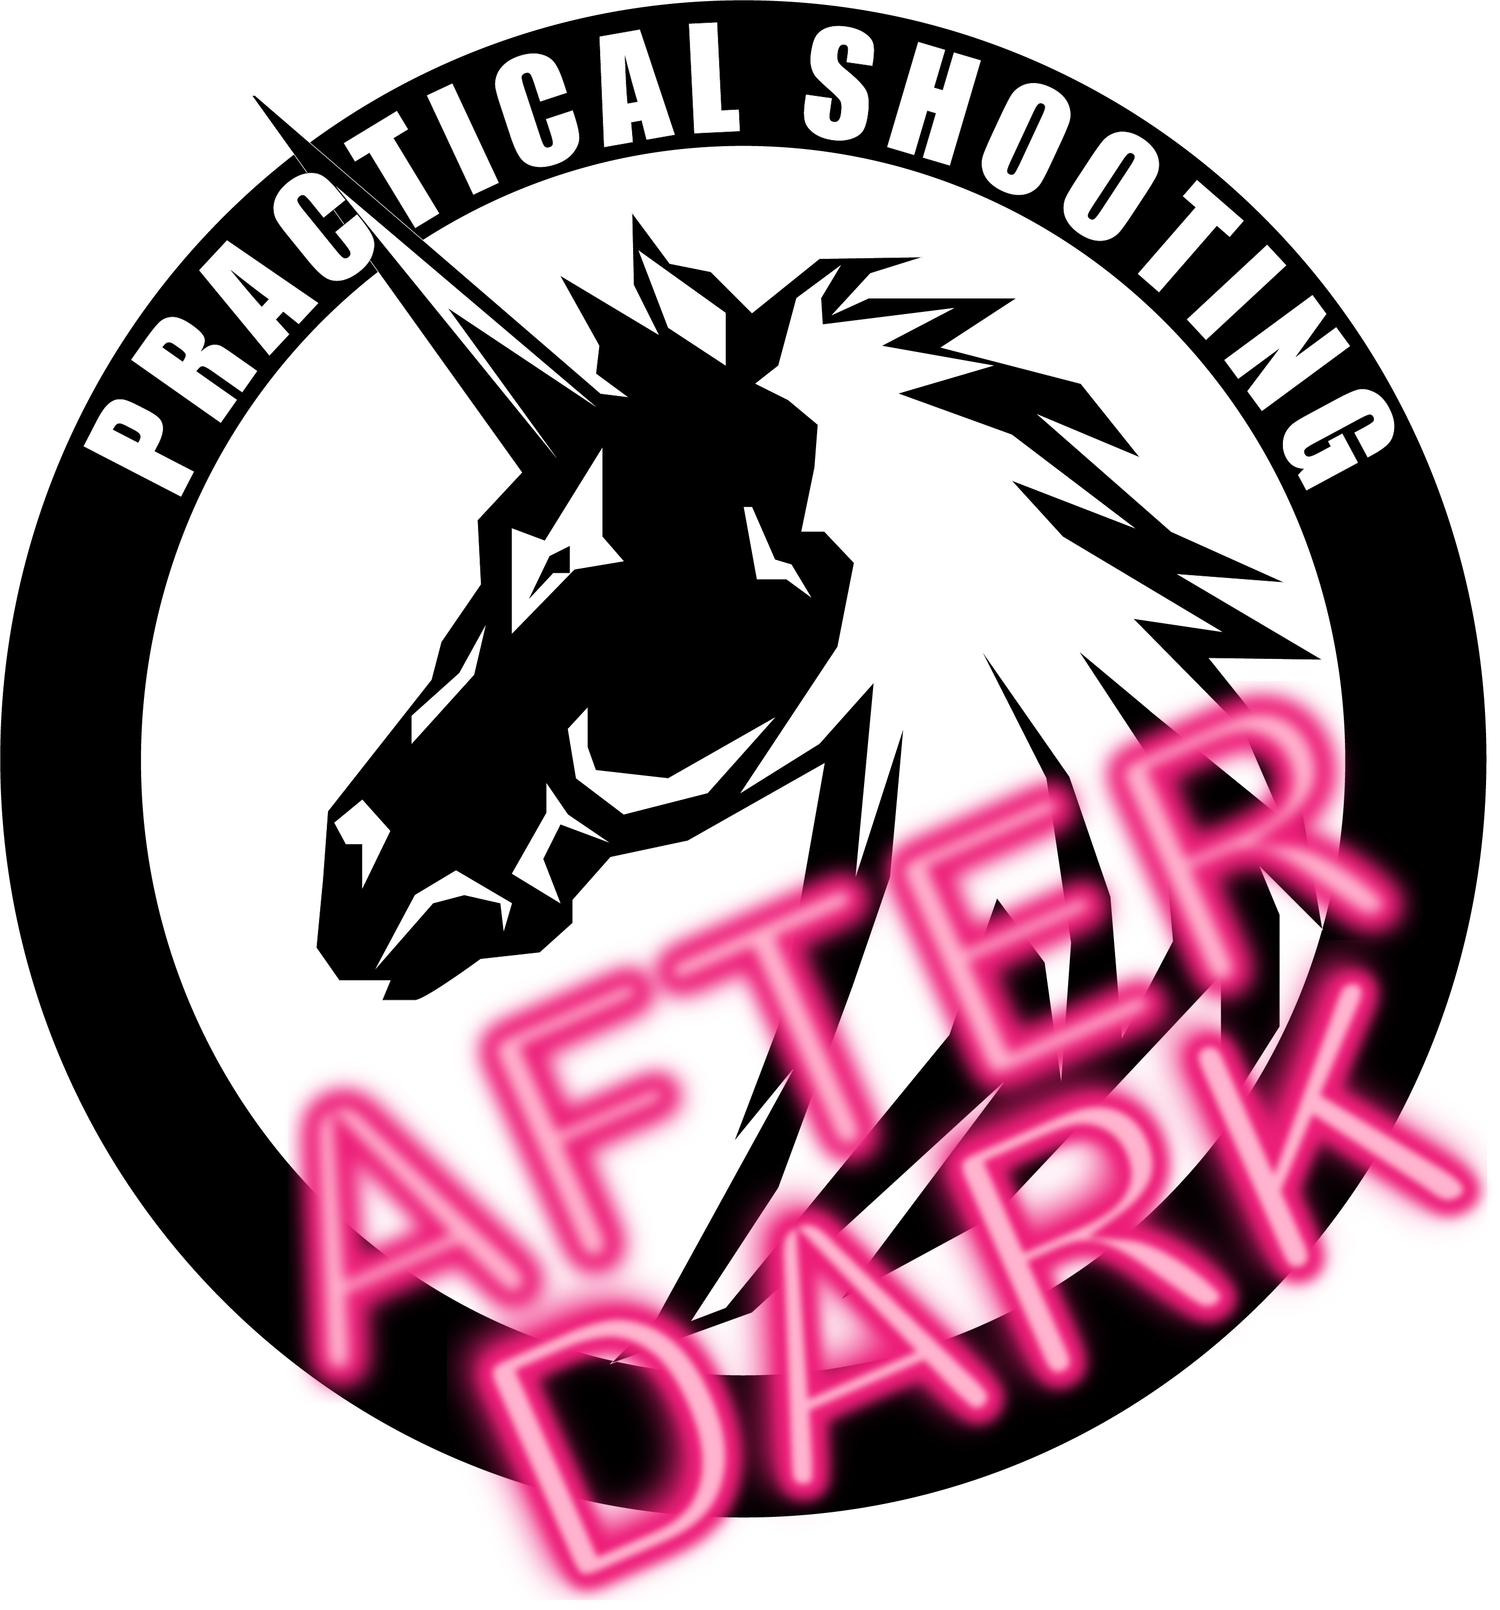 Practical Shooting After Dark by Ben Stoeger